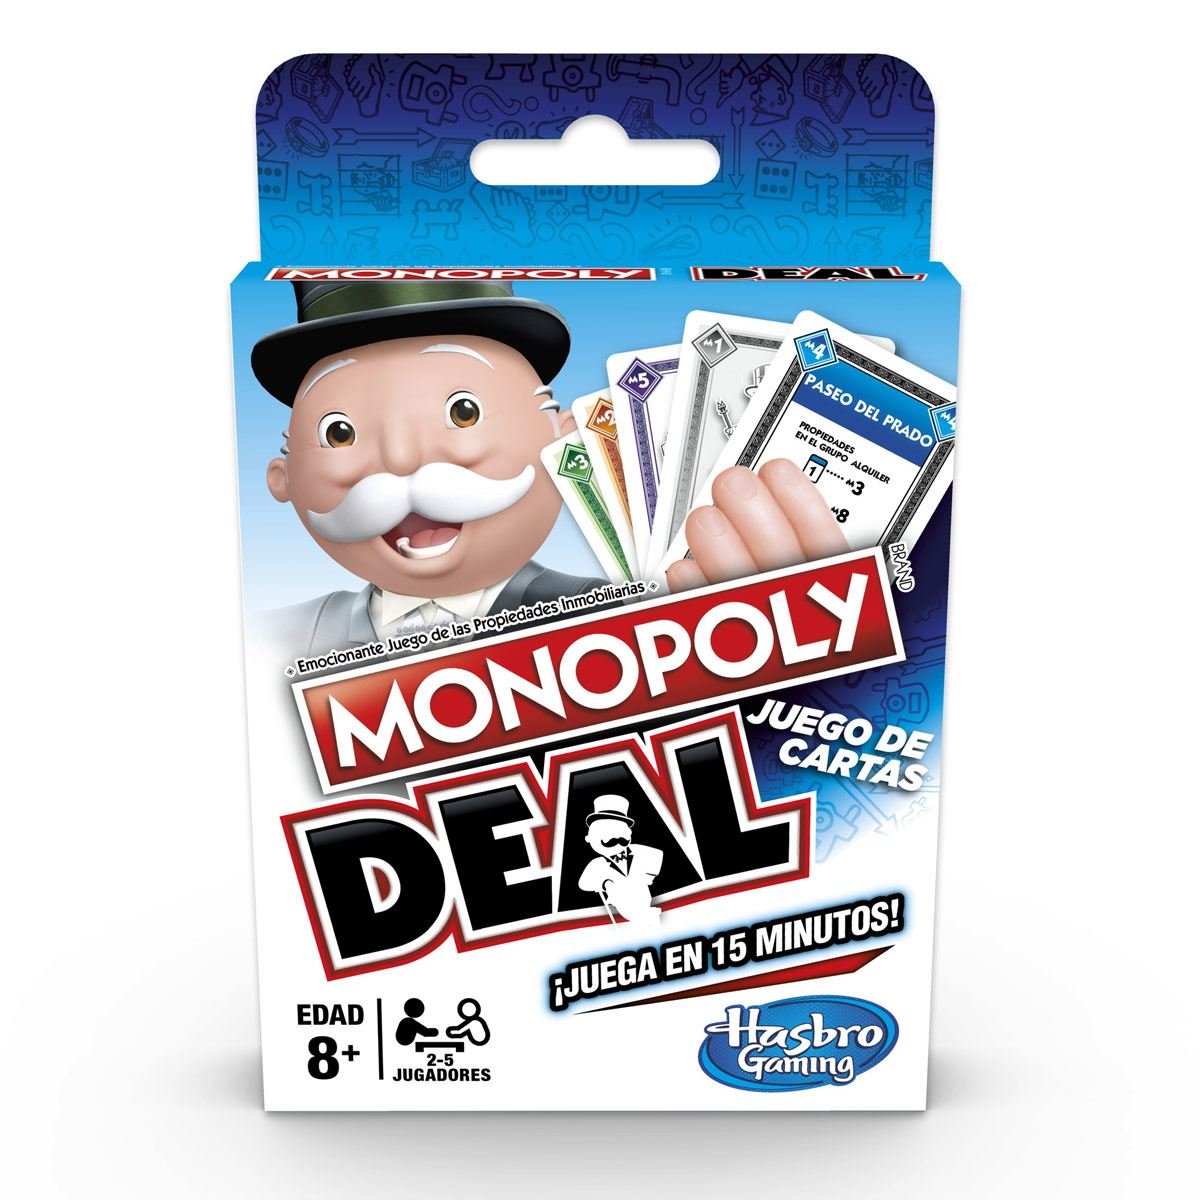 Juego de Mesa Monopoly Deal Juego de Cartas Hasbro Gaming